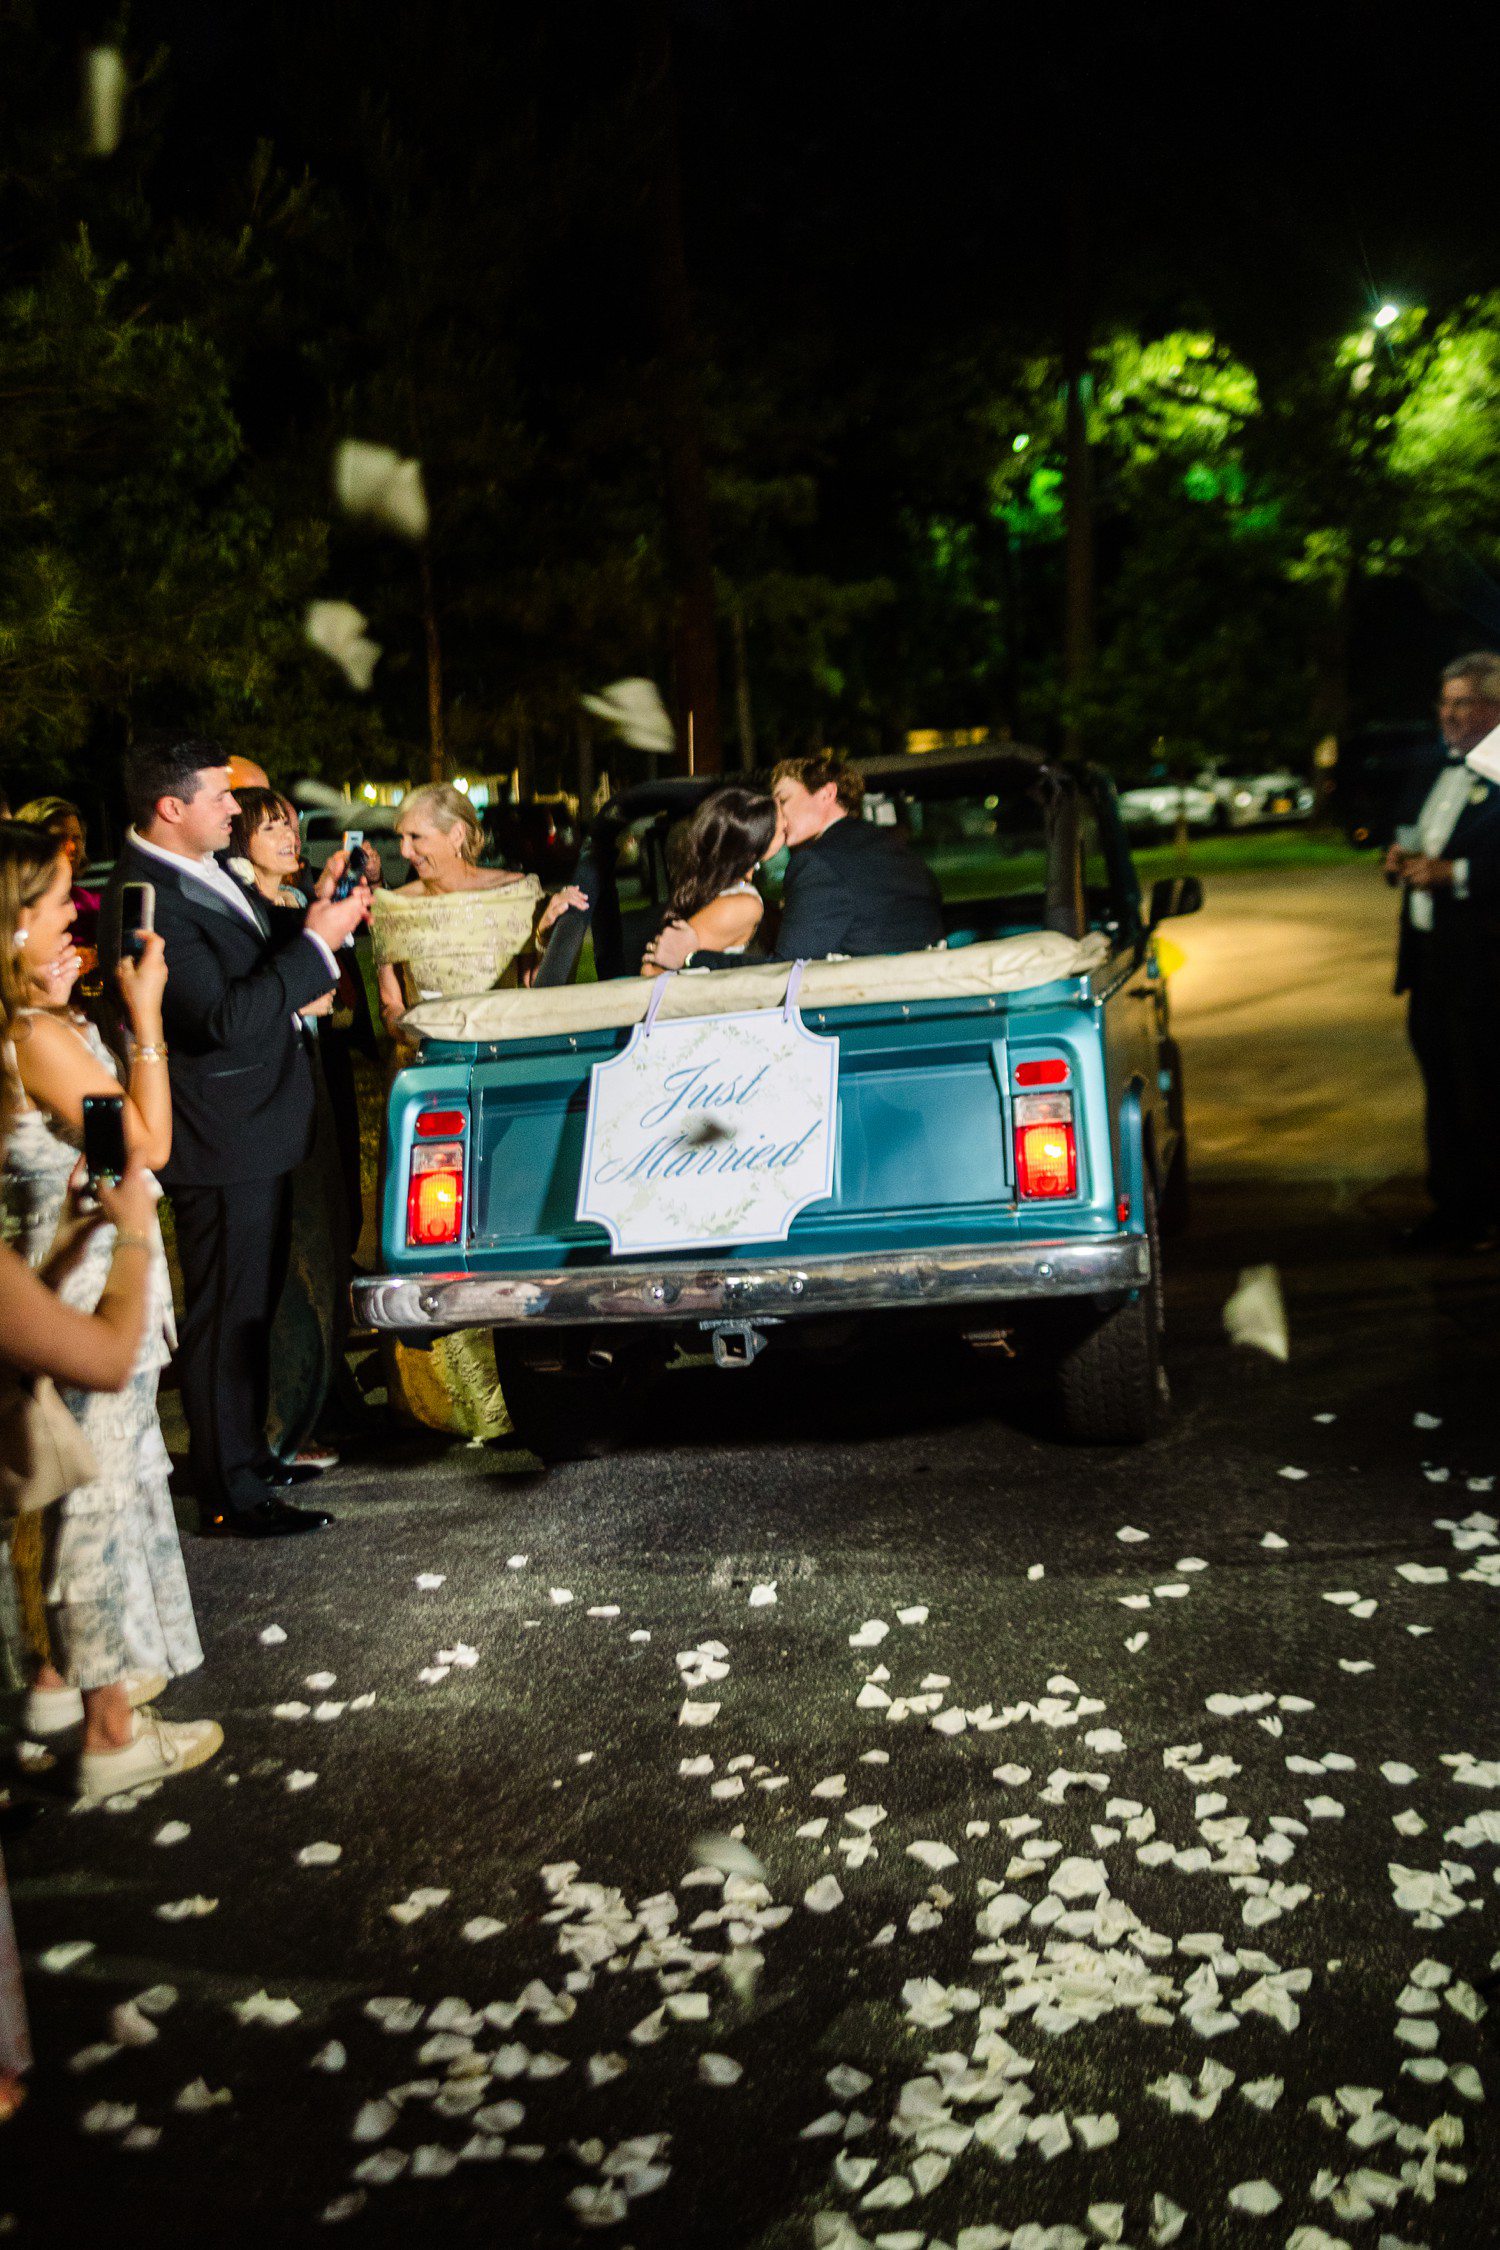 Bride and groom kissing in wedding getaway car.